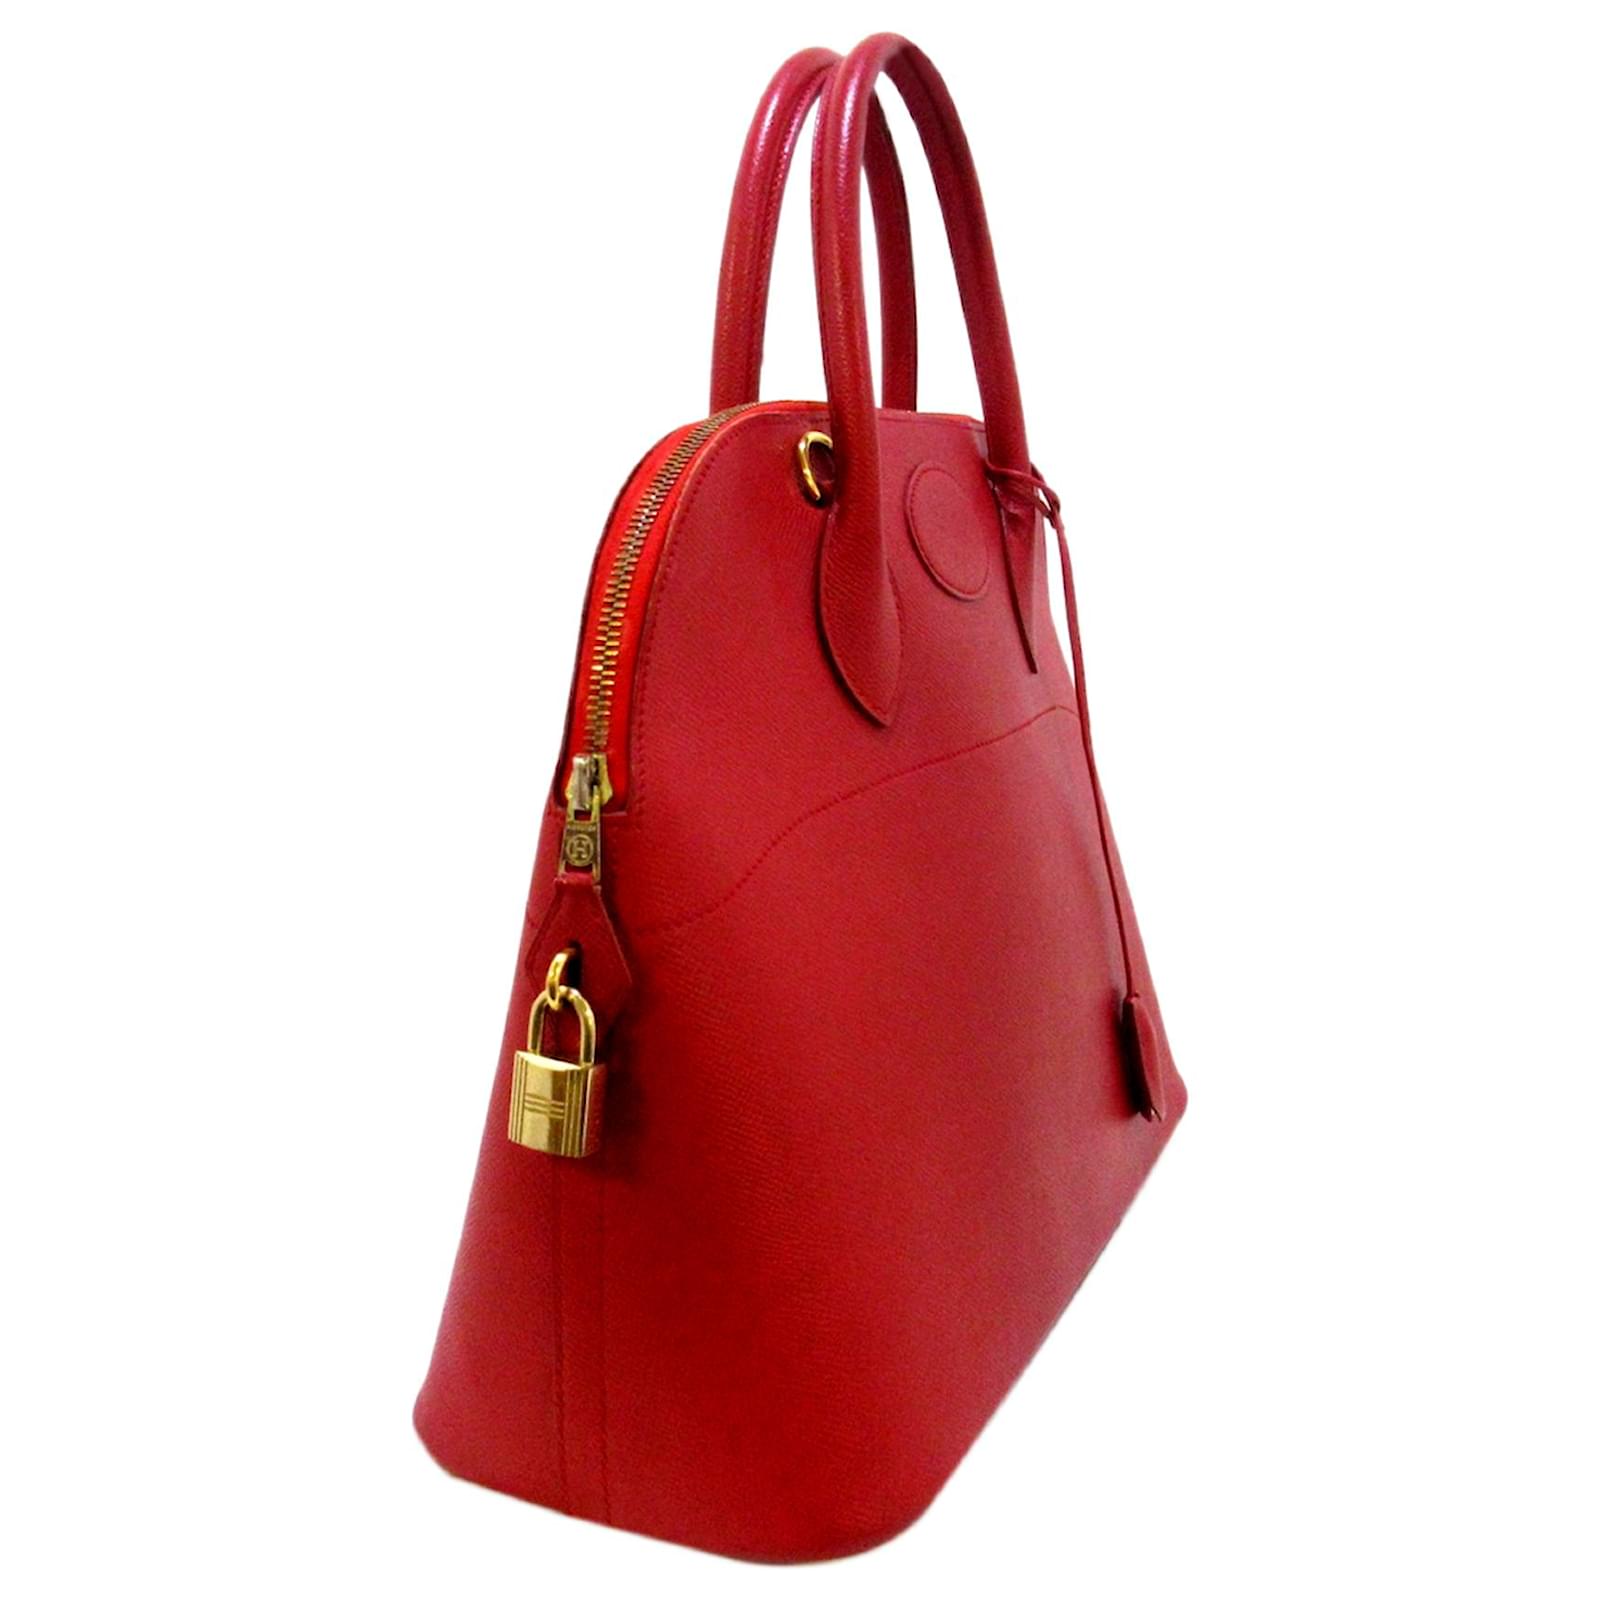 Hermes Bolide 35 cm Handbag in Red Epsom Leather